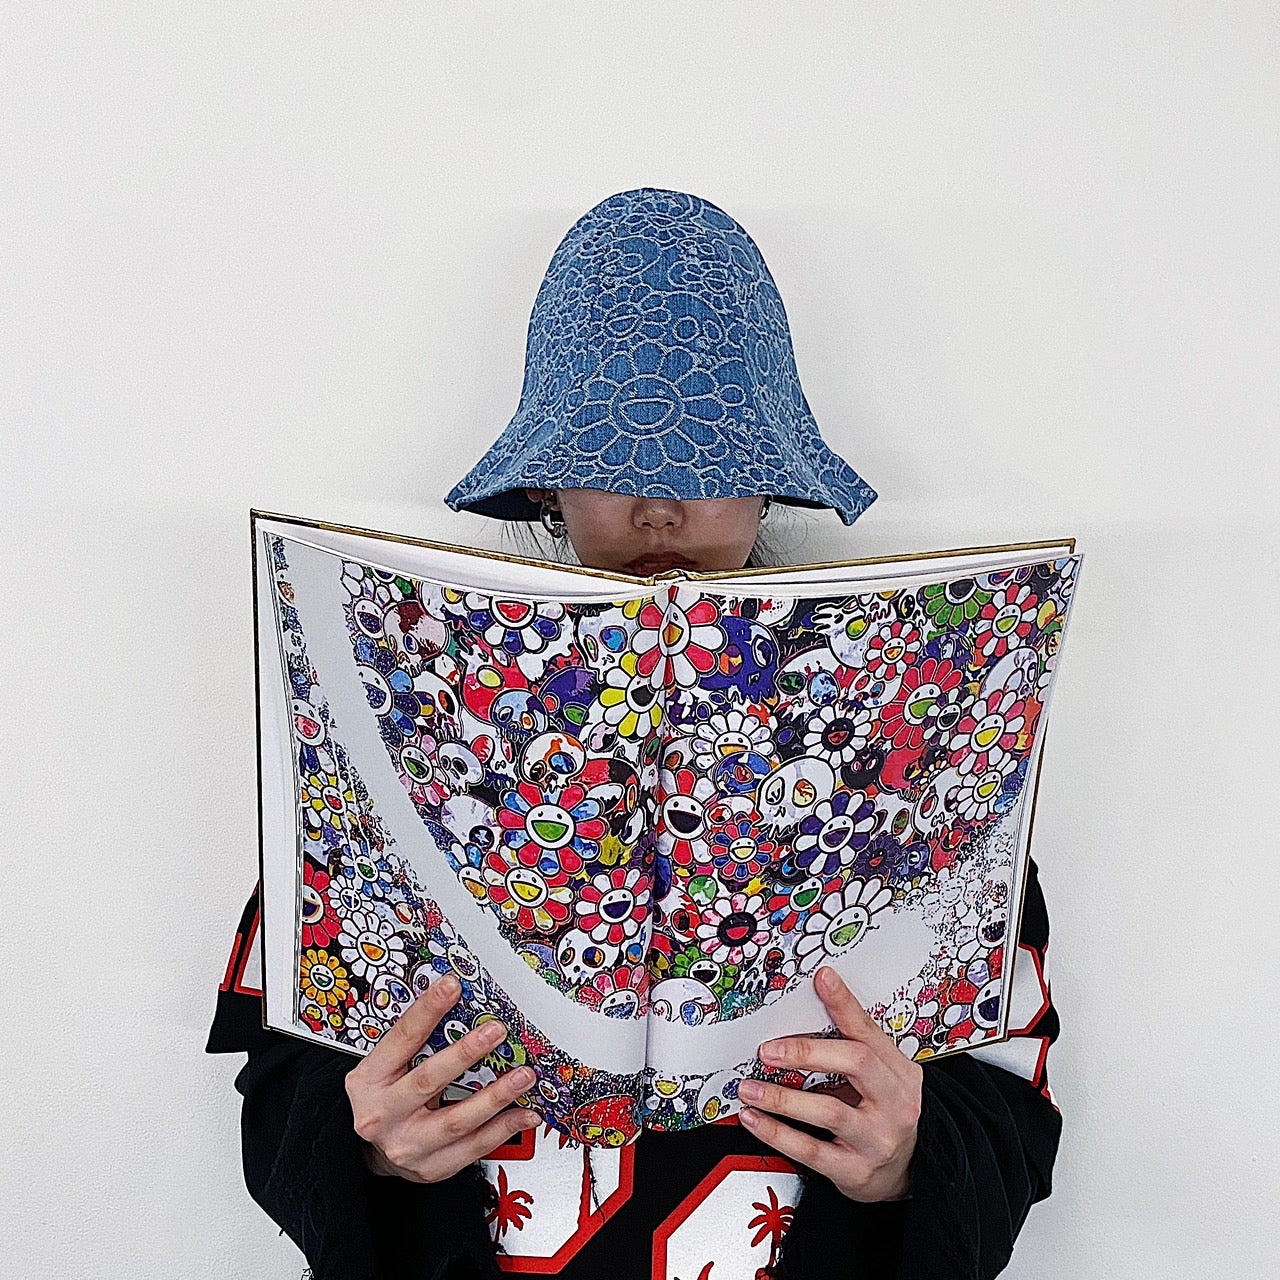 Takashi Murakami / kaikai kiki】 The new reversible tulip hat will